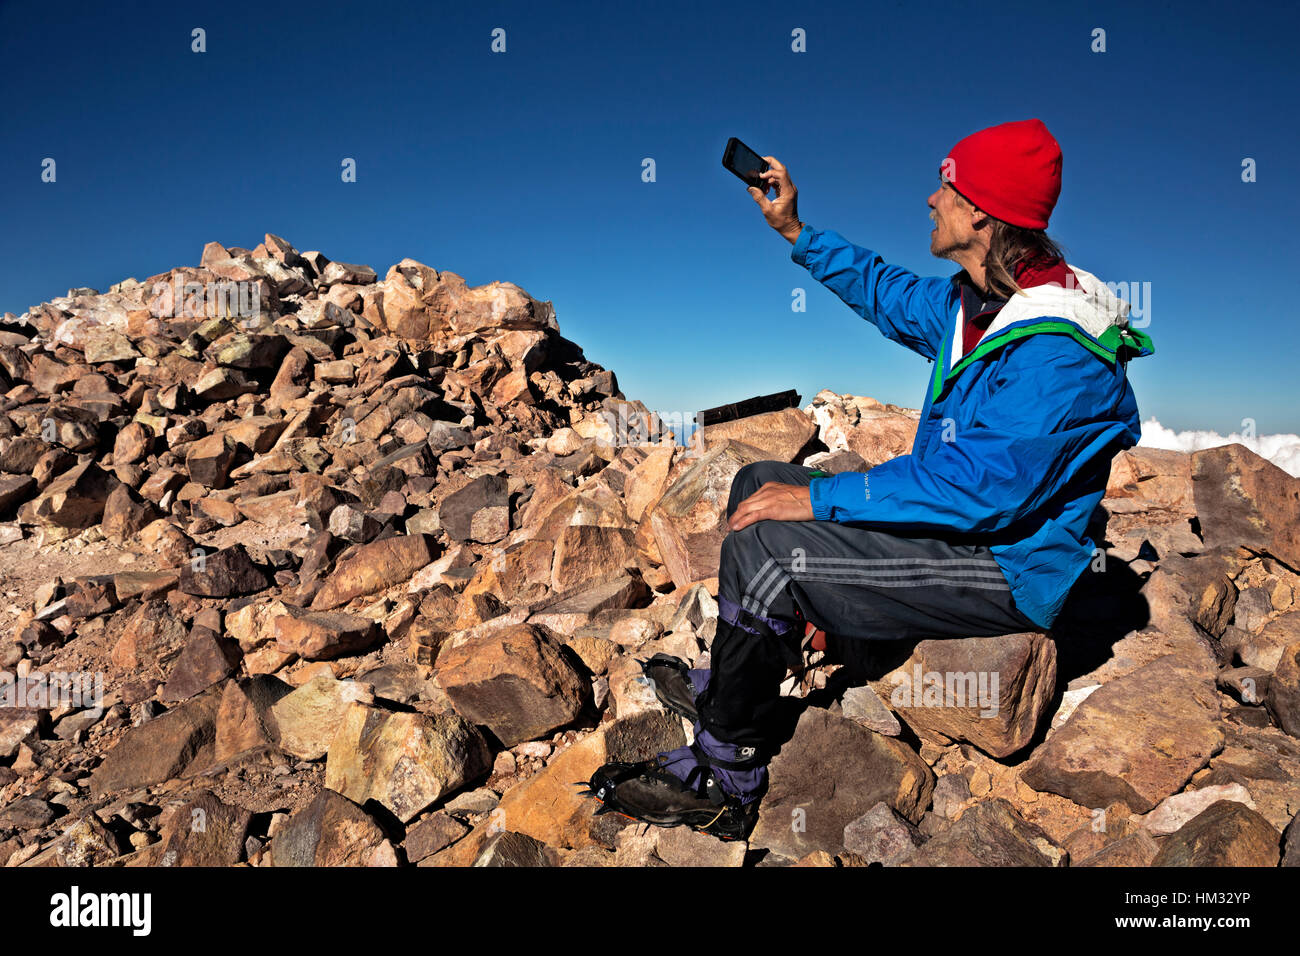 CA02940-00... Kalifornien - Kletterer auf dem 14.179-Fuß-Gipfel des Mount Shasta in Mount Shasta Wildnisgebiet unter ein Selbstporträt. Stockfoto